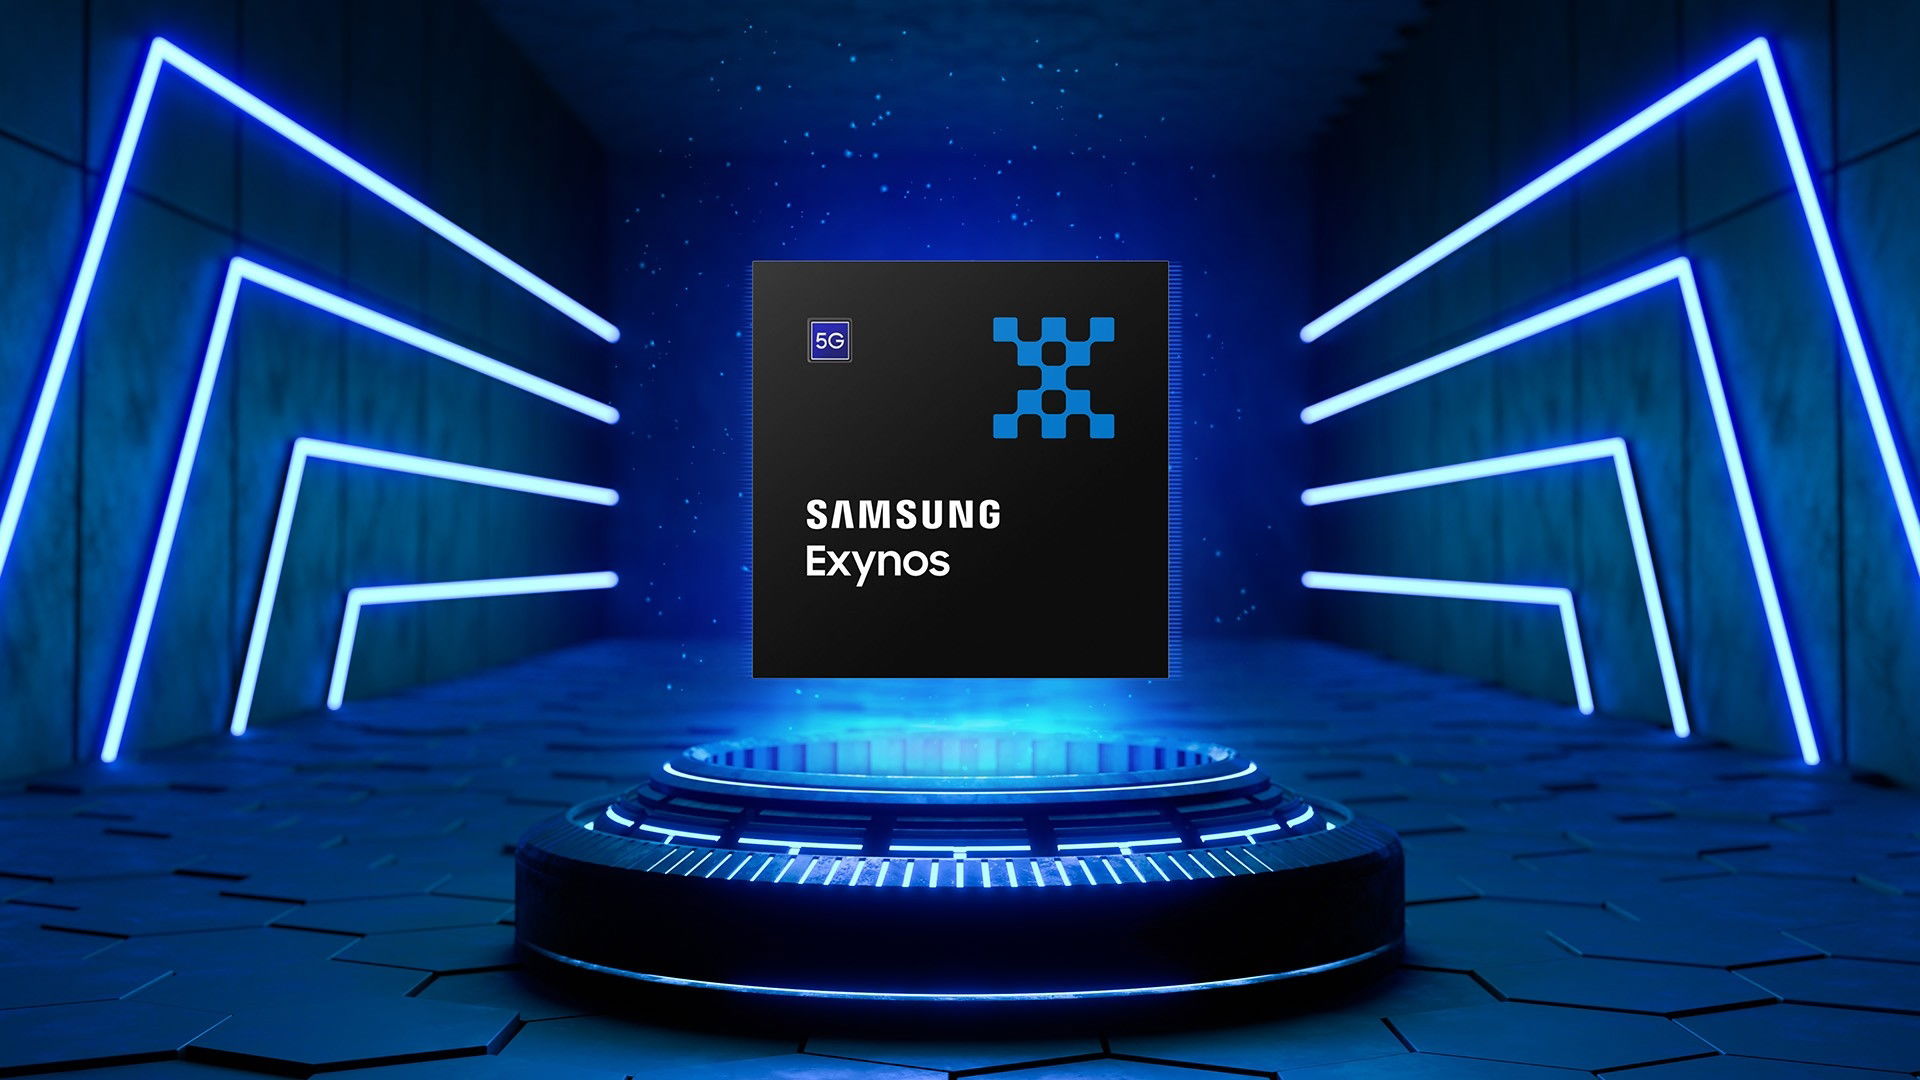 processador exynos da Samsung sobre um pedestral azul de luz